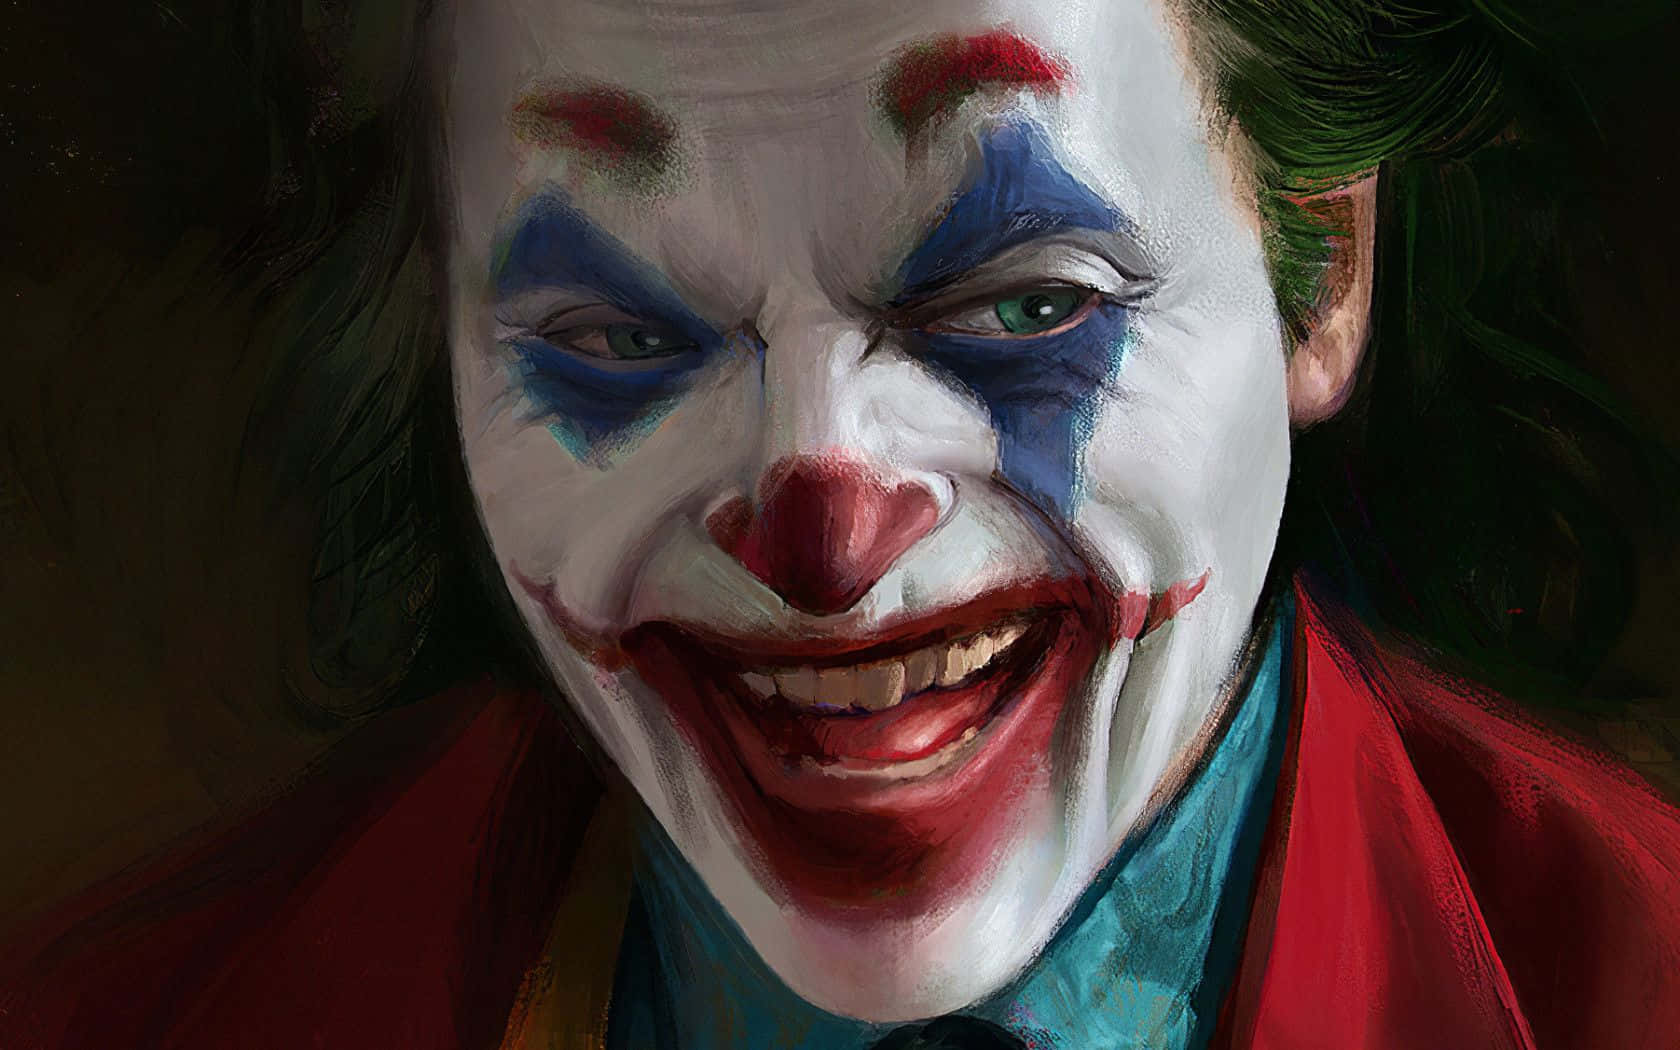 Dangerous Joker Creepy Digital Art Background